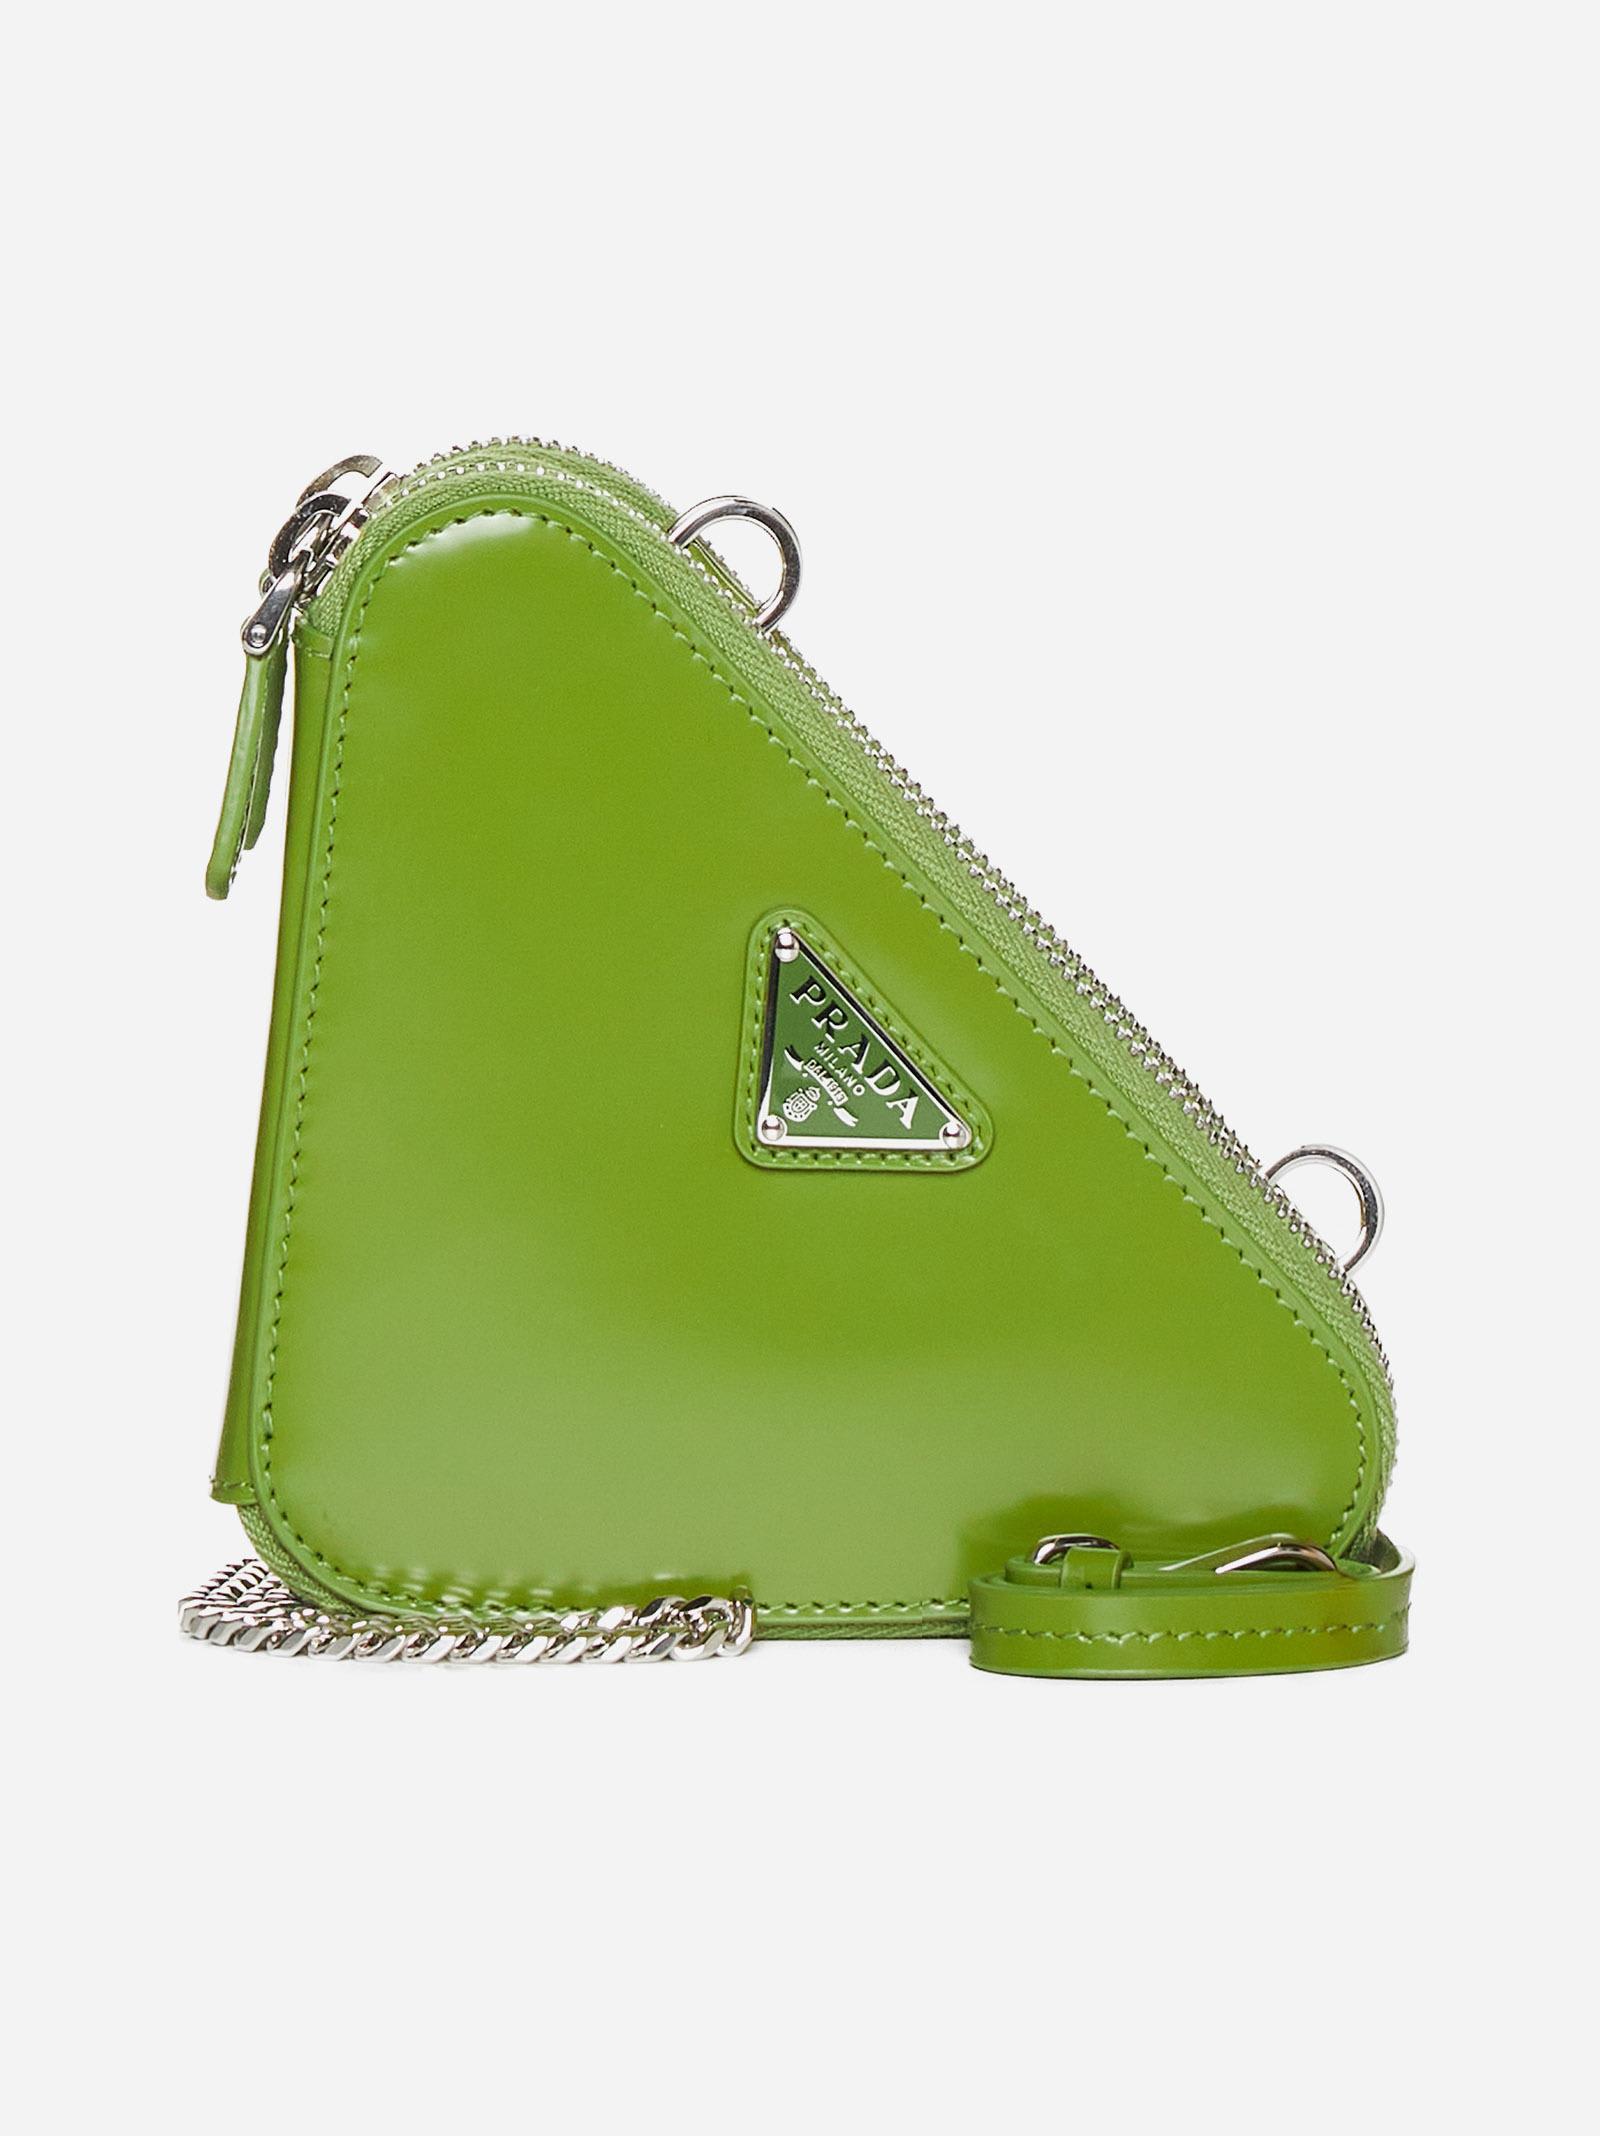 Prada Triangle Double Leather Mini Bag in Green